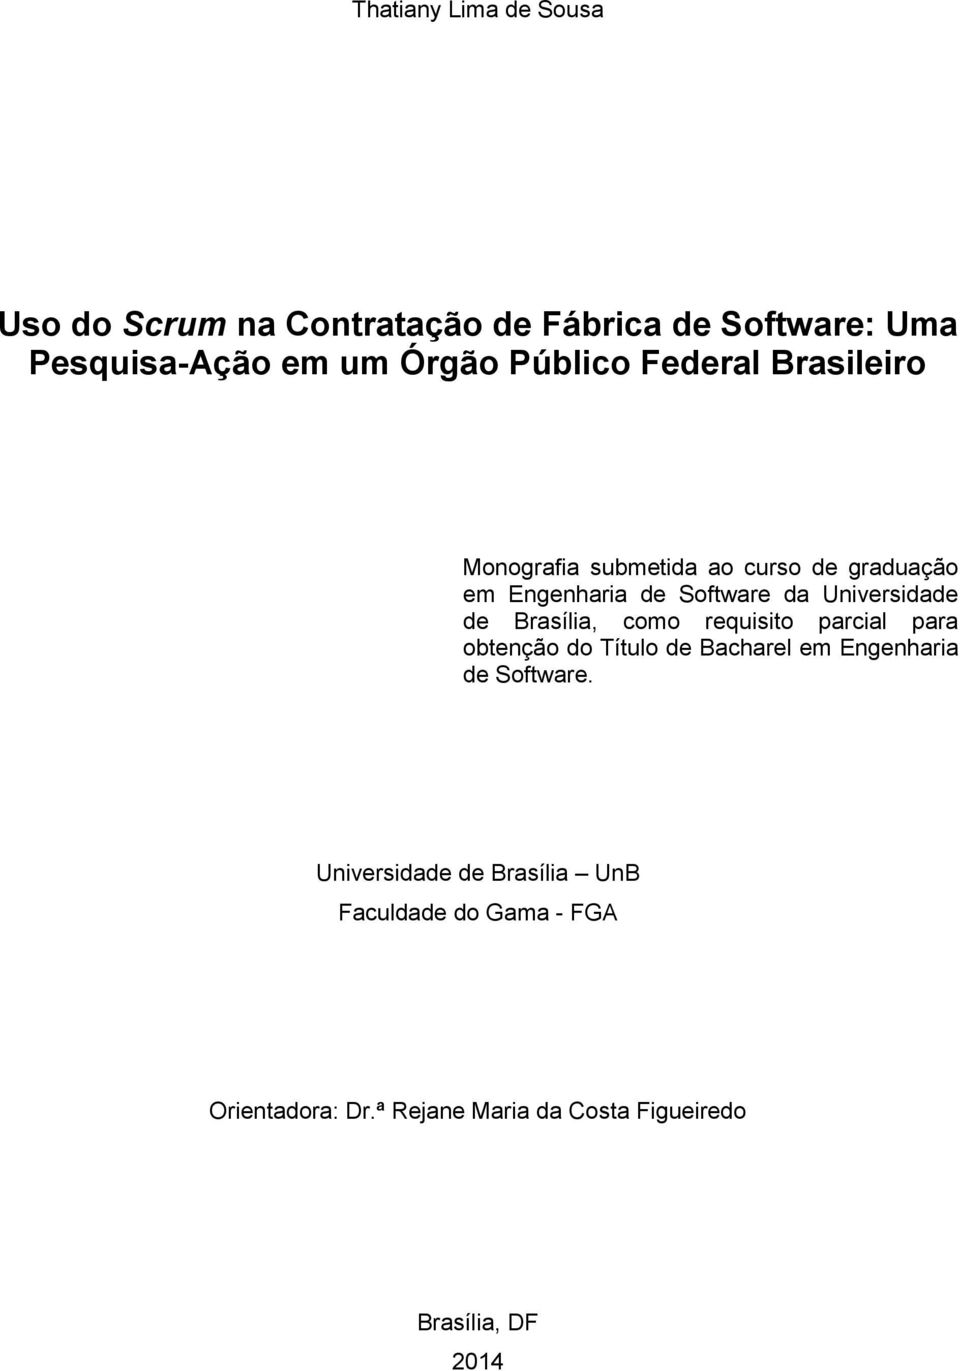 Universidade de Brasília, como requisito parcial para obtenção do Título de Bacharel em Engenharia de